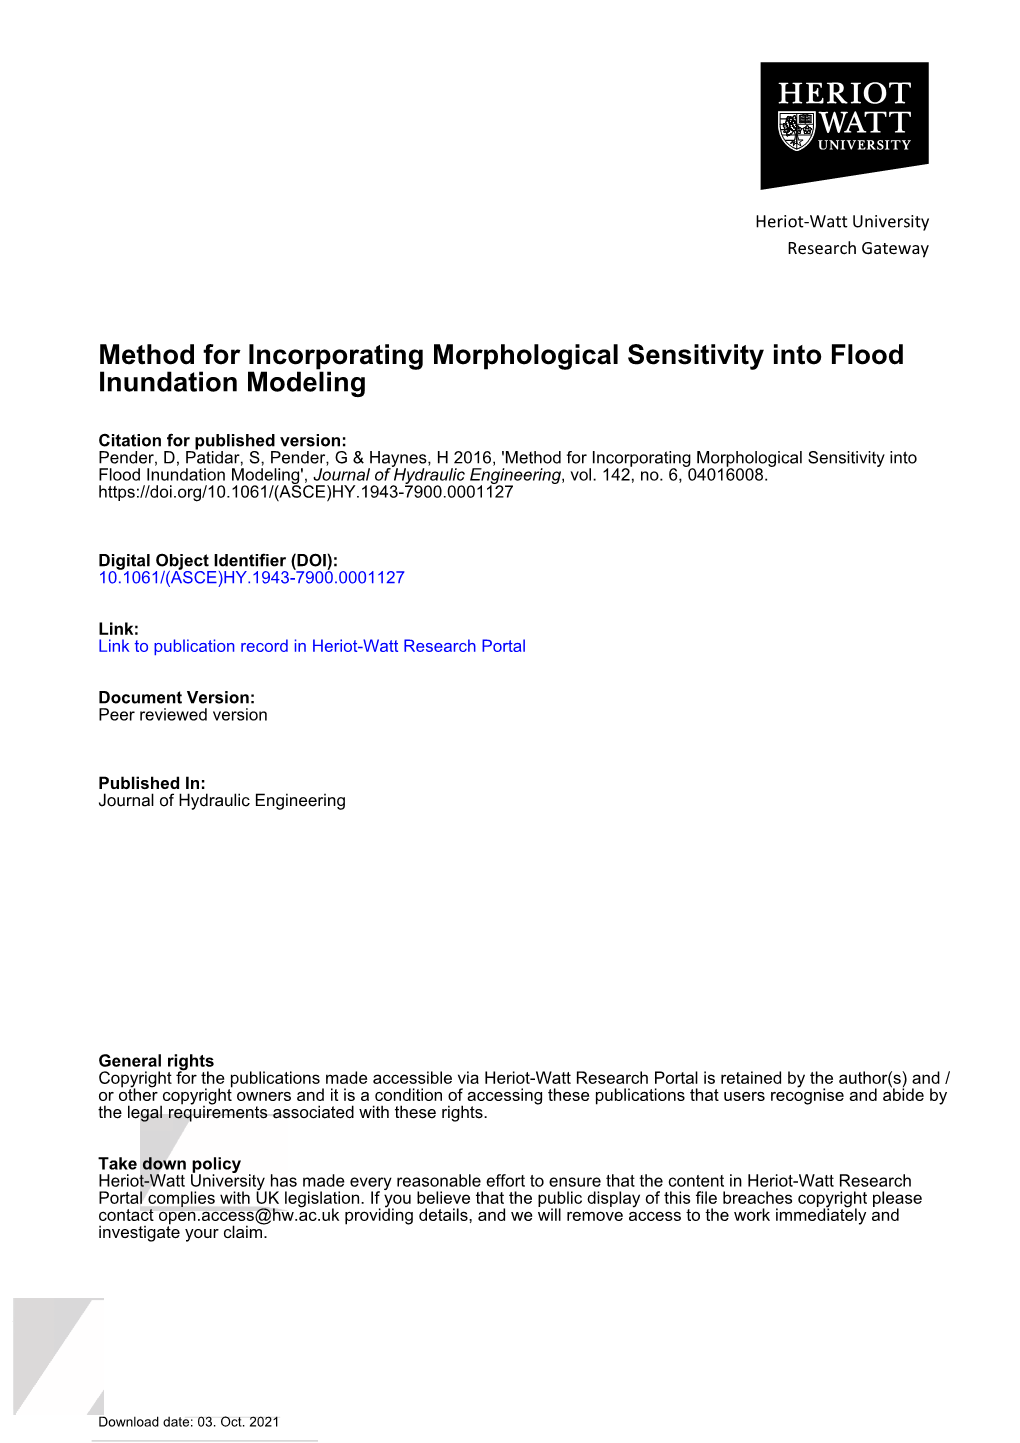 Method for Incorporating Morphological Sensitivity Into Flood Inundation Modeling